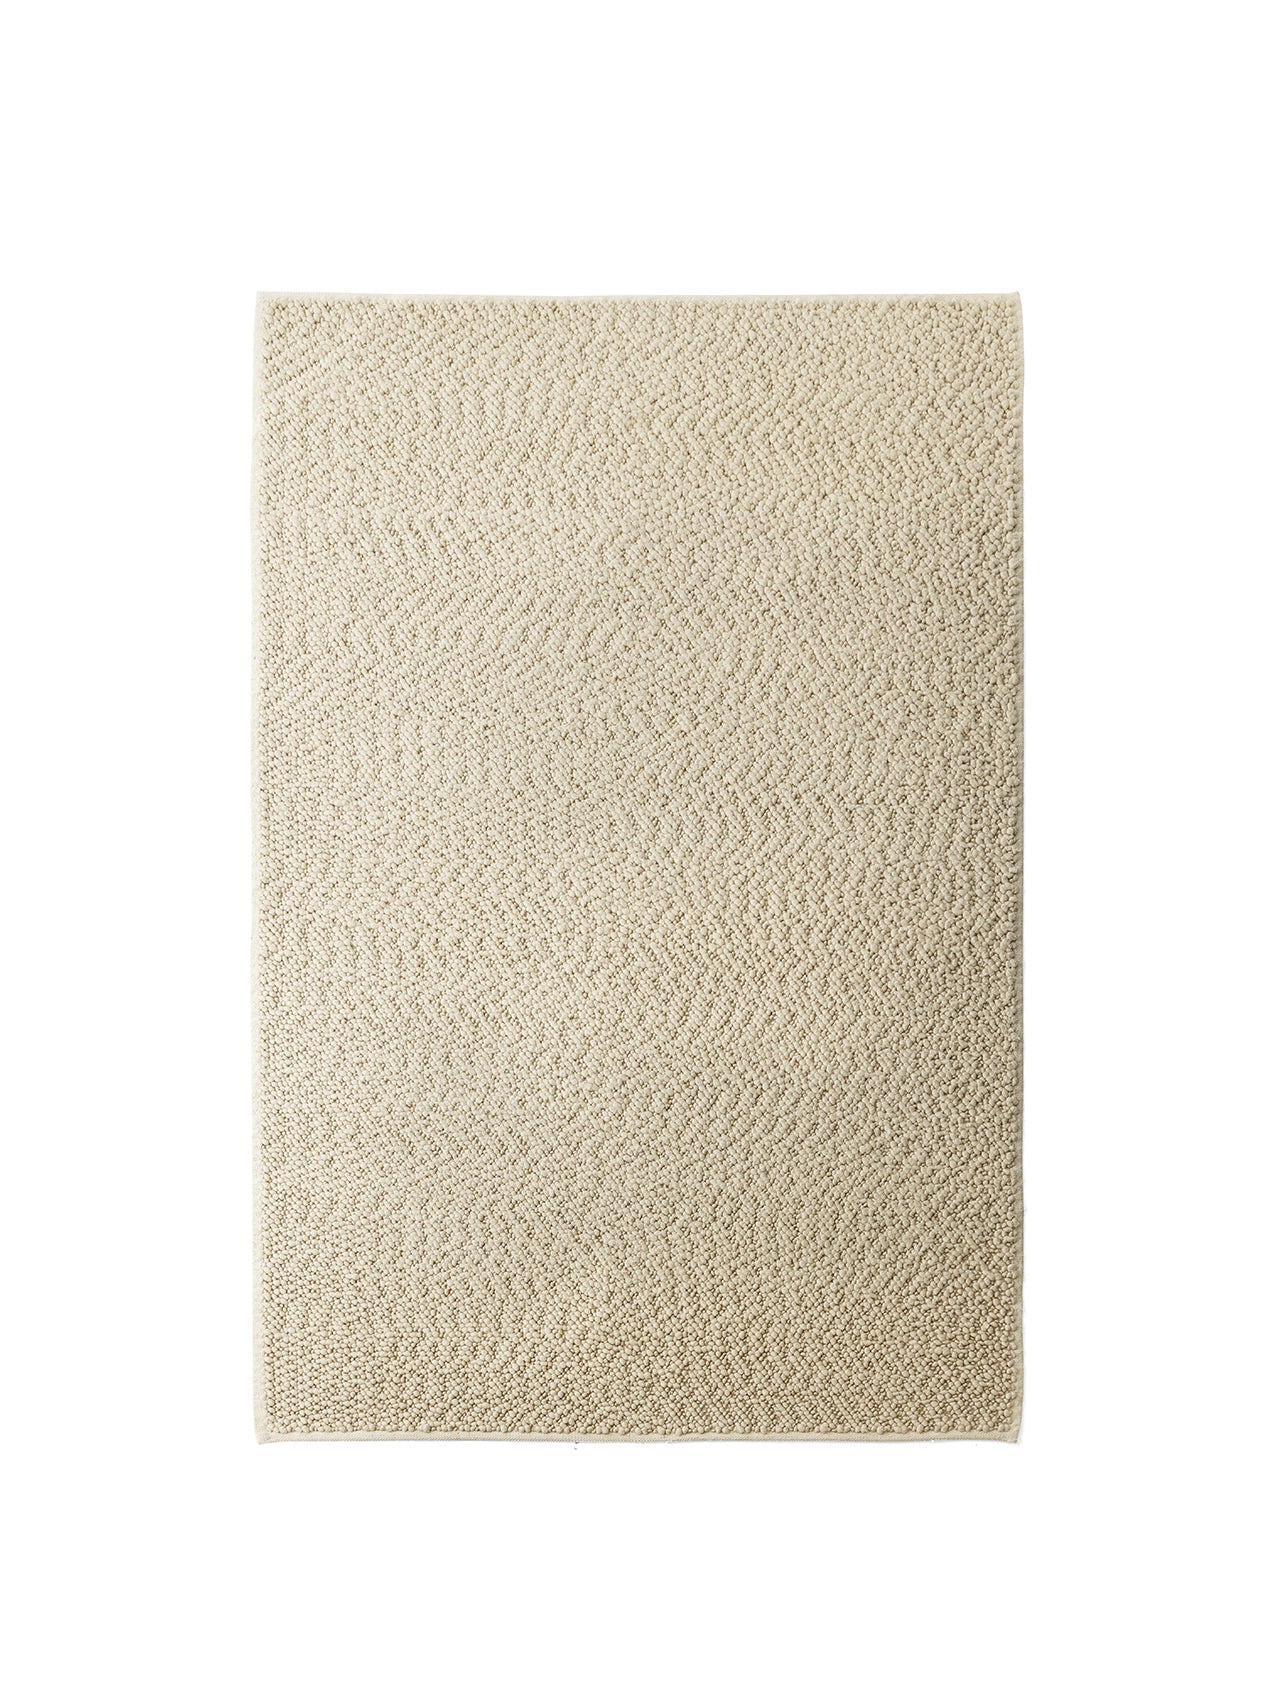 Menu - Gravel tapijt, 200x300 cm, ivoren